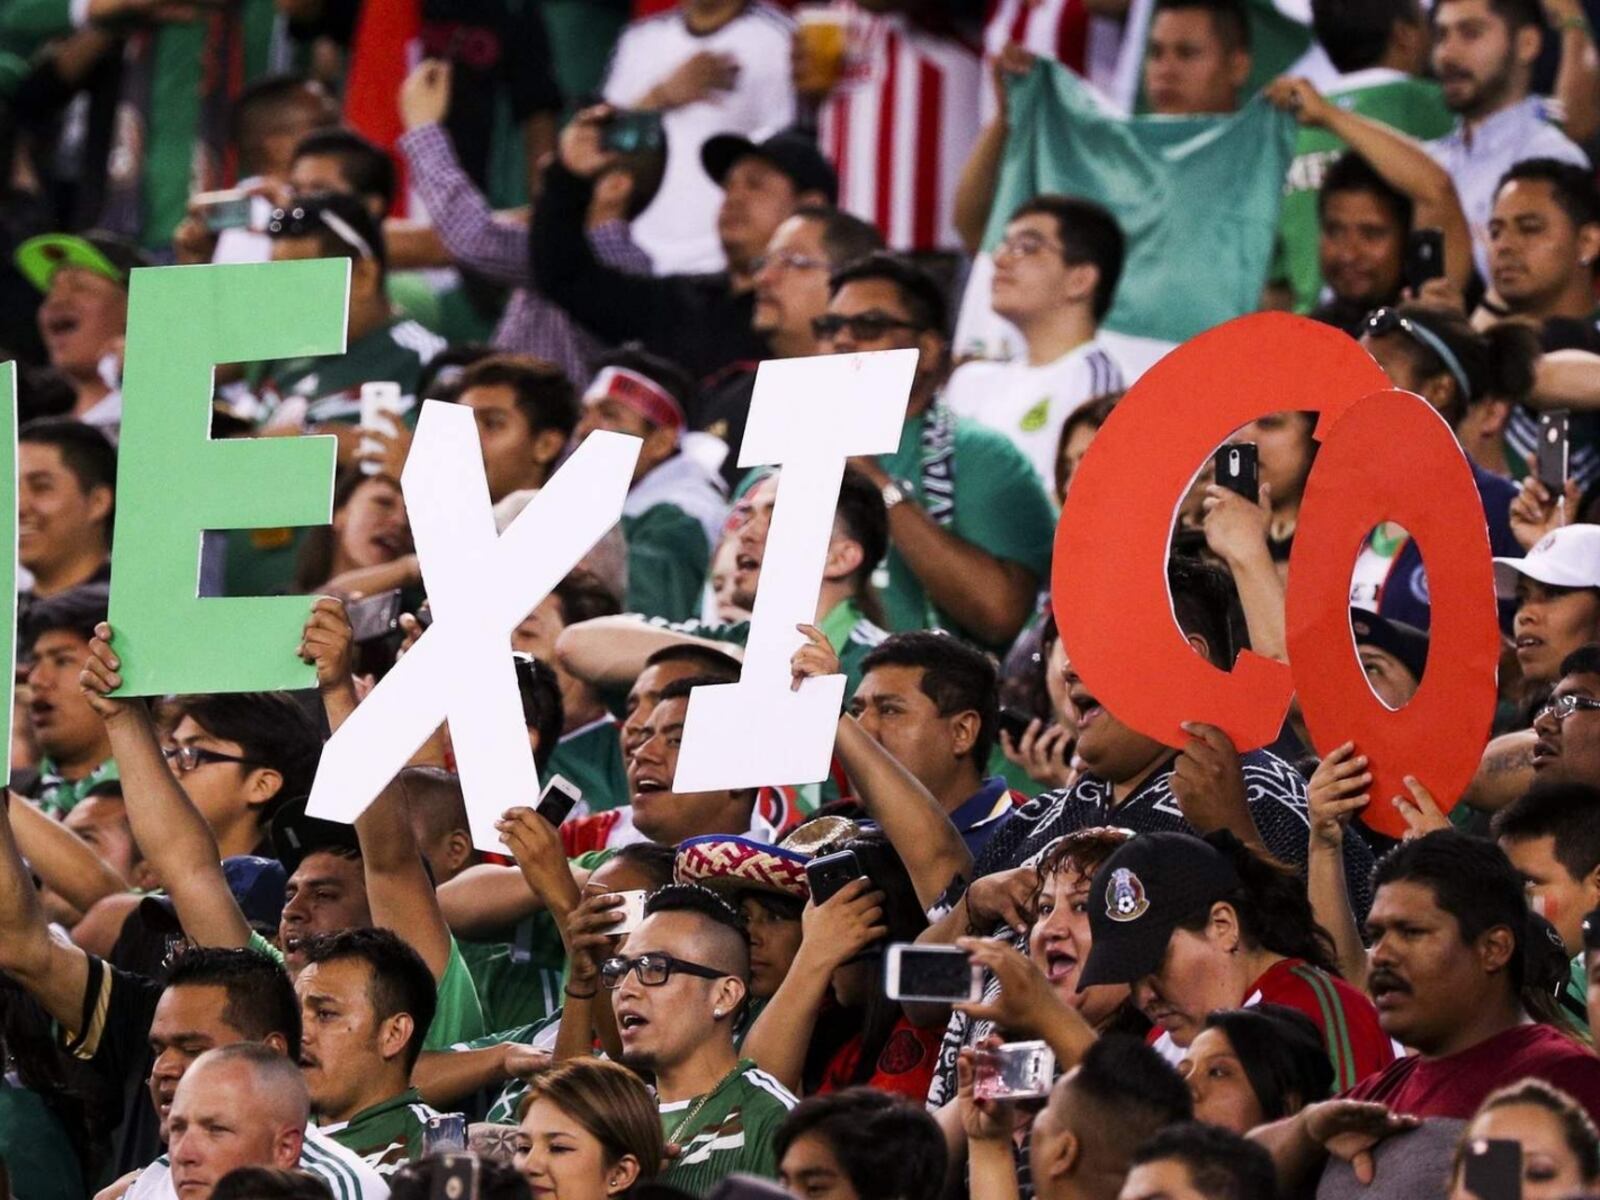 Copa Oro: El grito homofóbico se hizo presente y la tremenda cifra que debe pagar México ante la FIFA por no erradicarlo